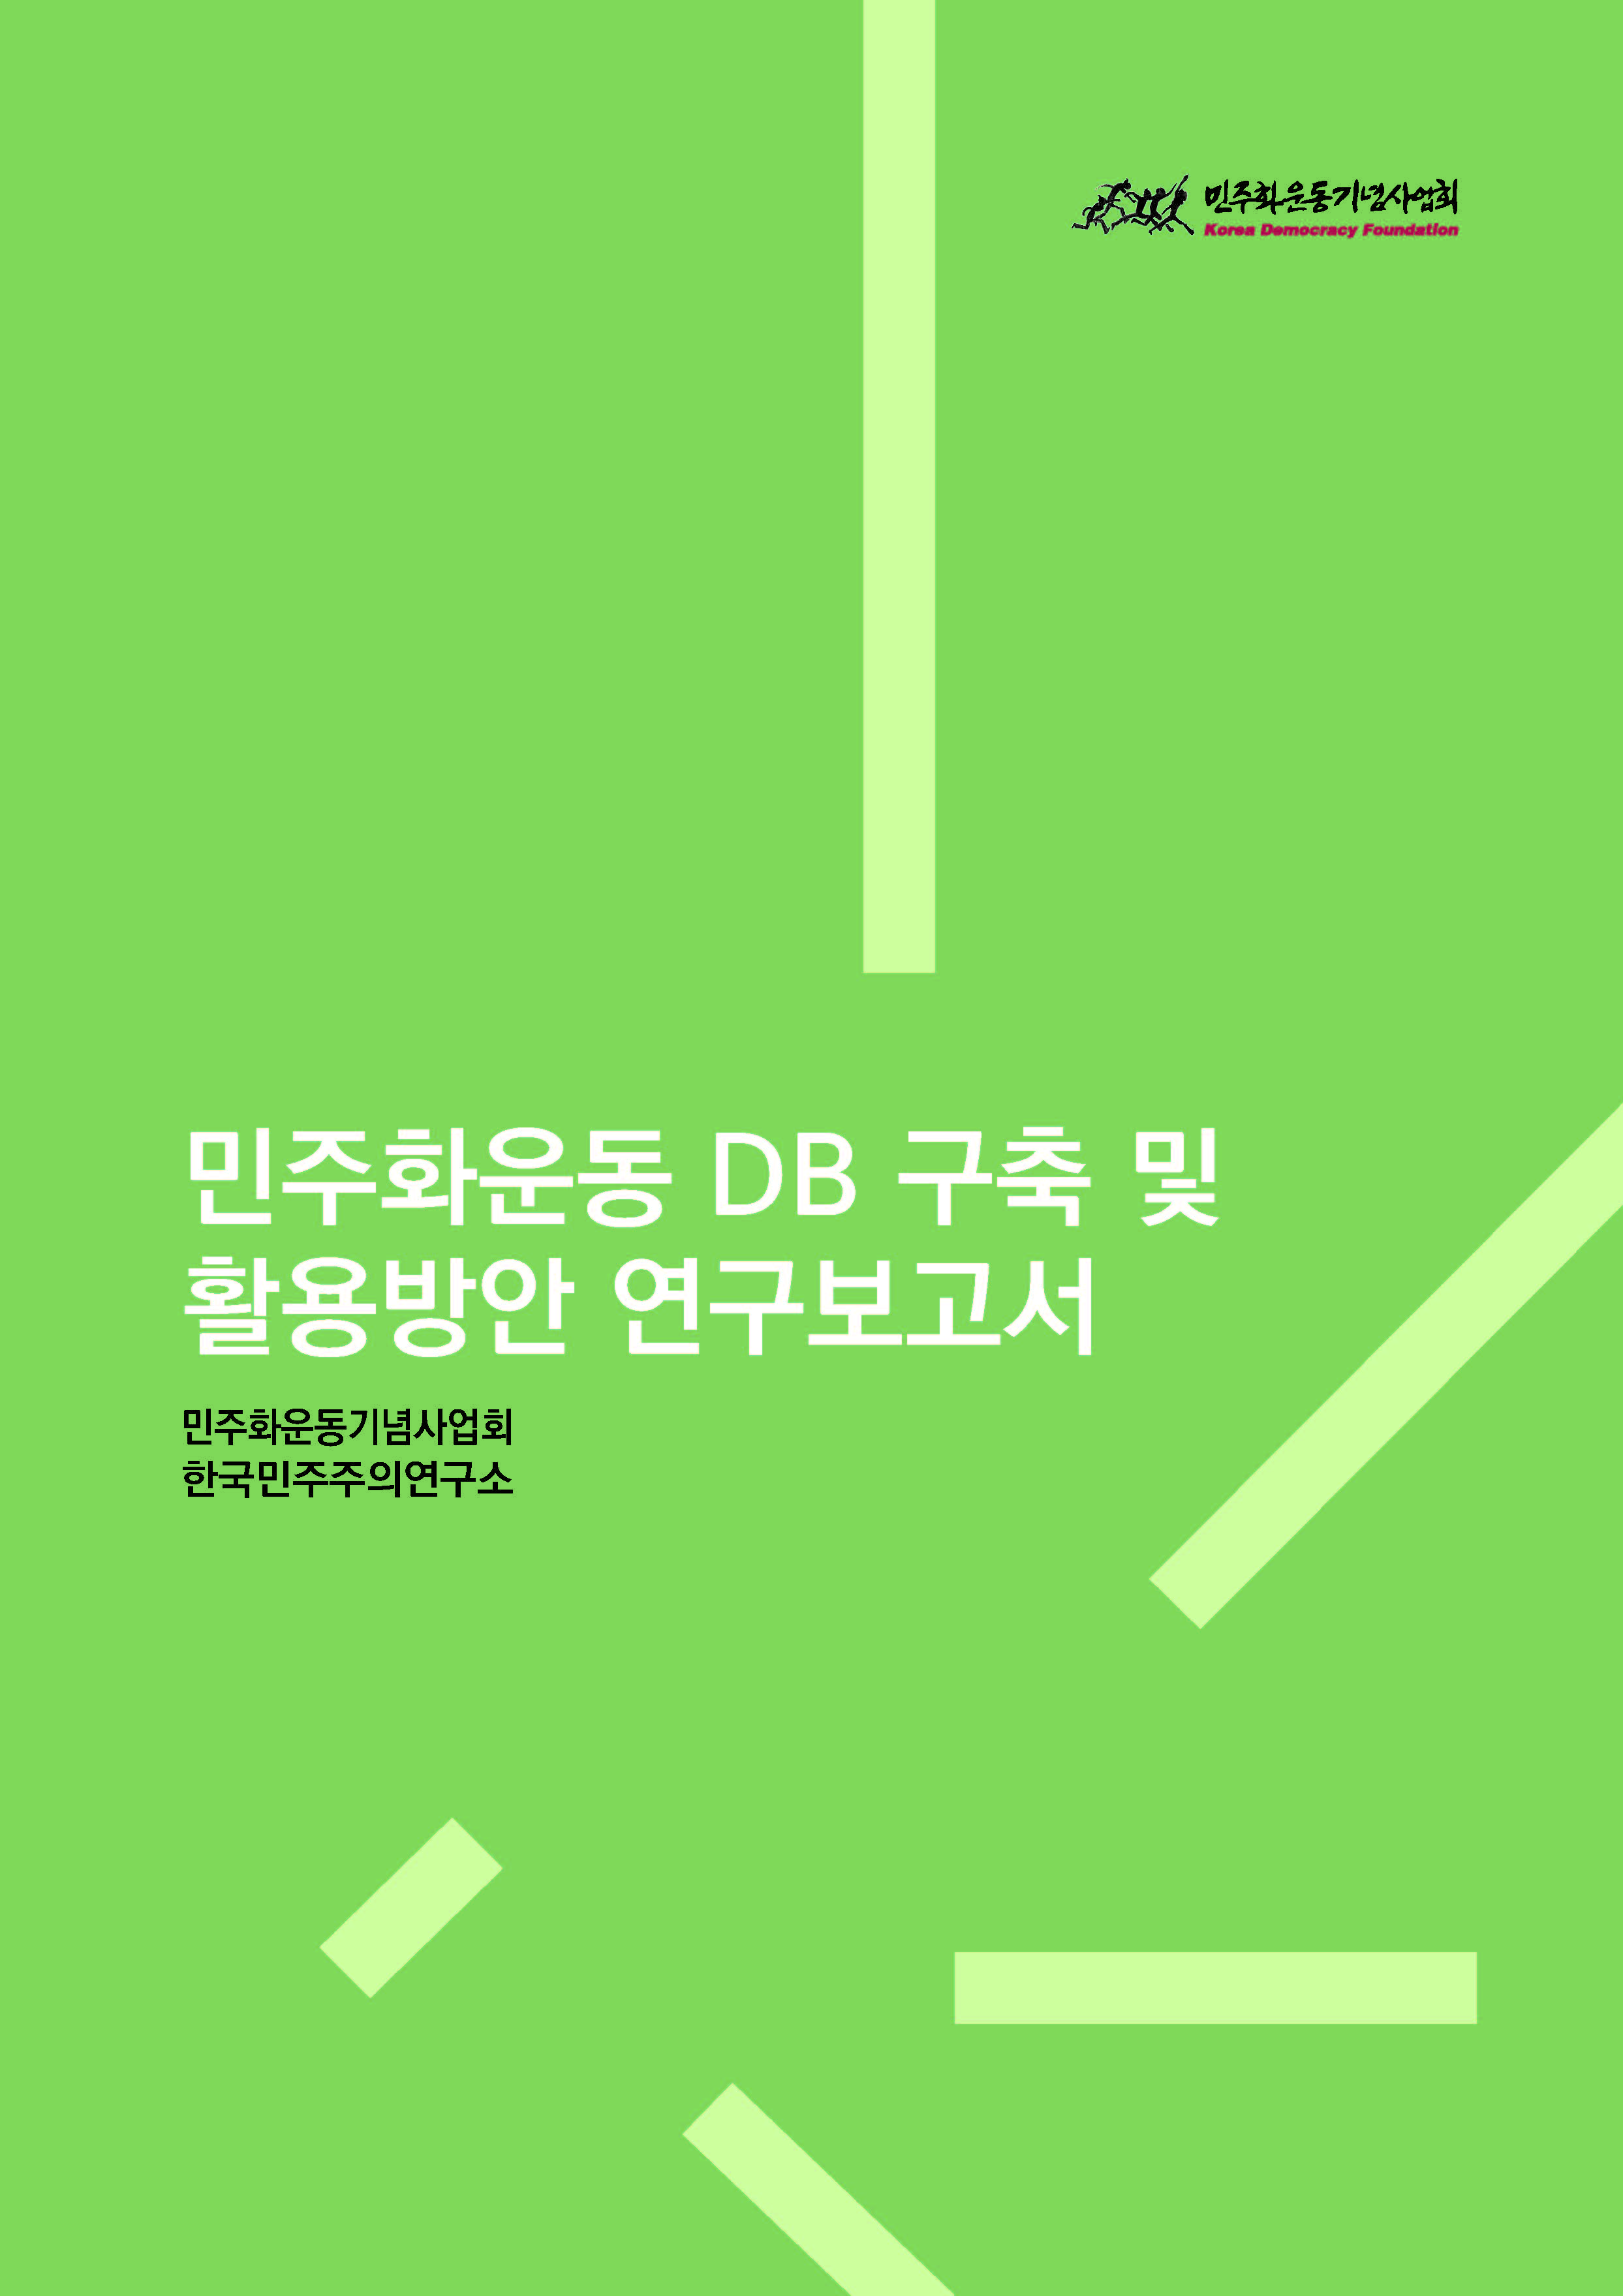 [연구보고서] 민주화운동 DB 구축 및 활용방안 표지 이미지